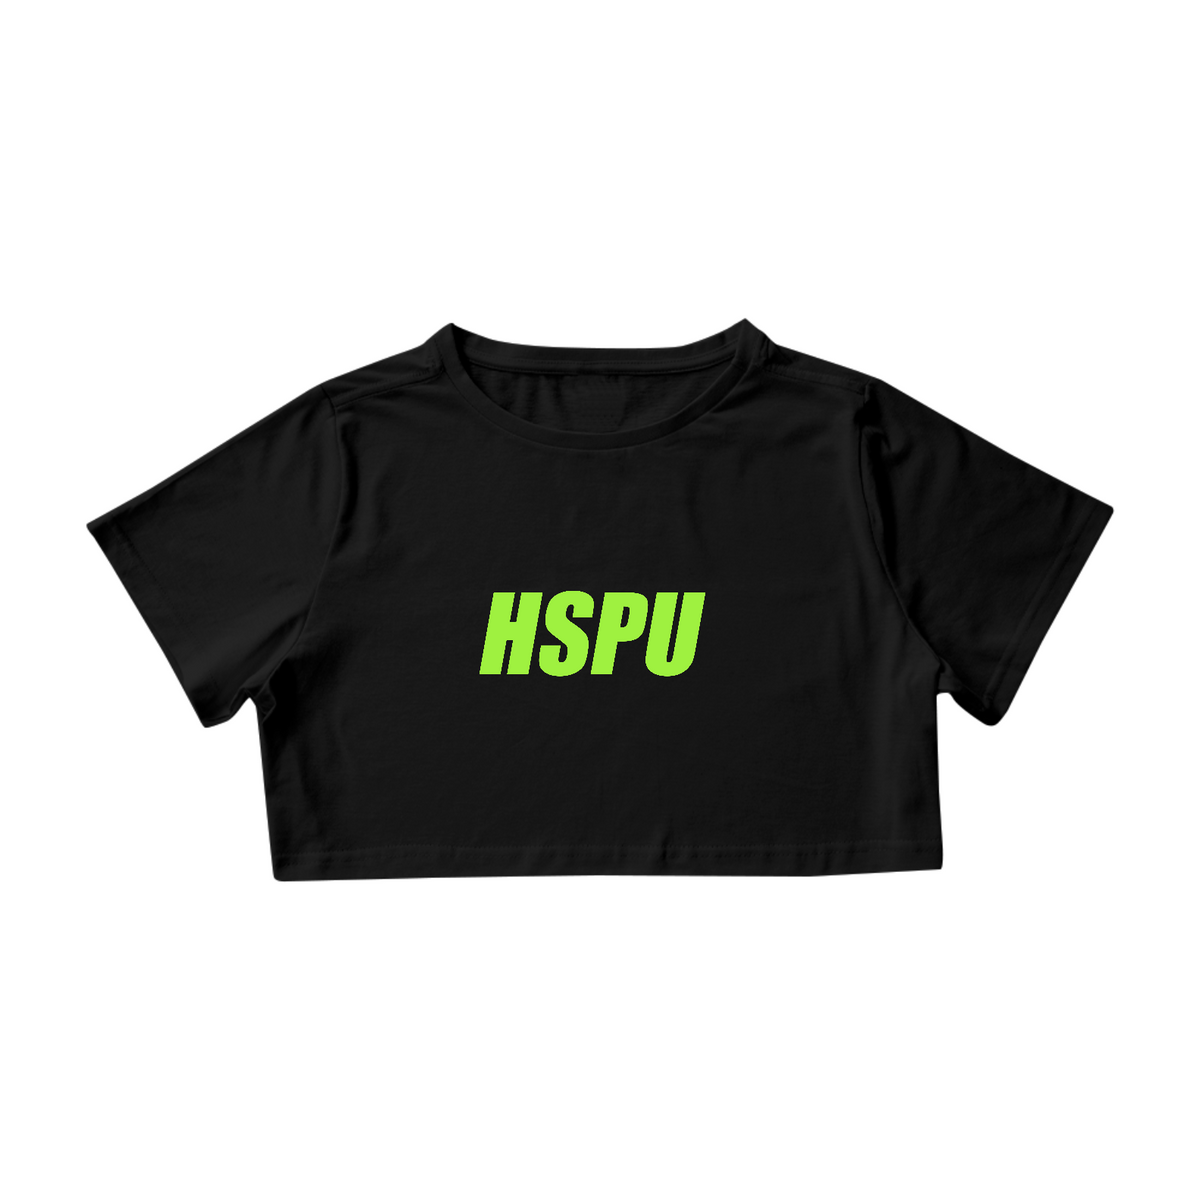 Nome do produto: HSPU - letras verdes